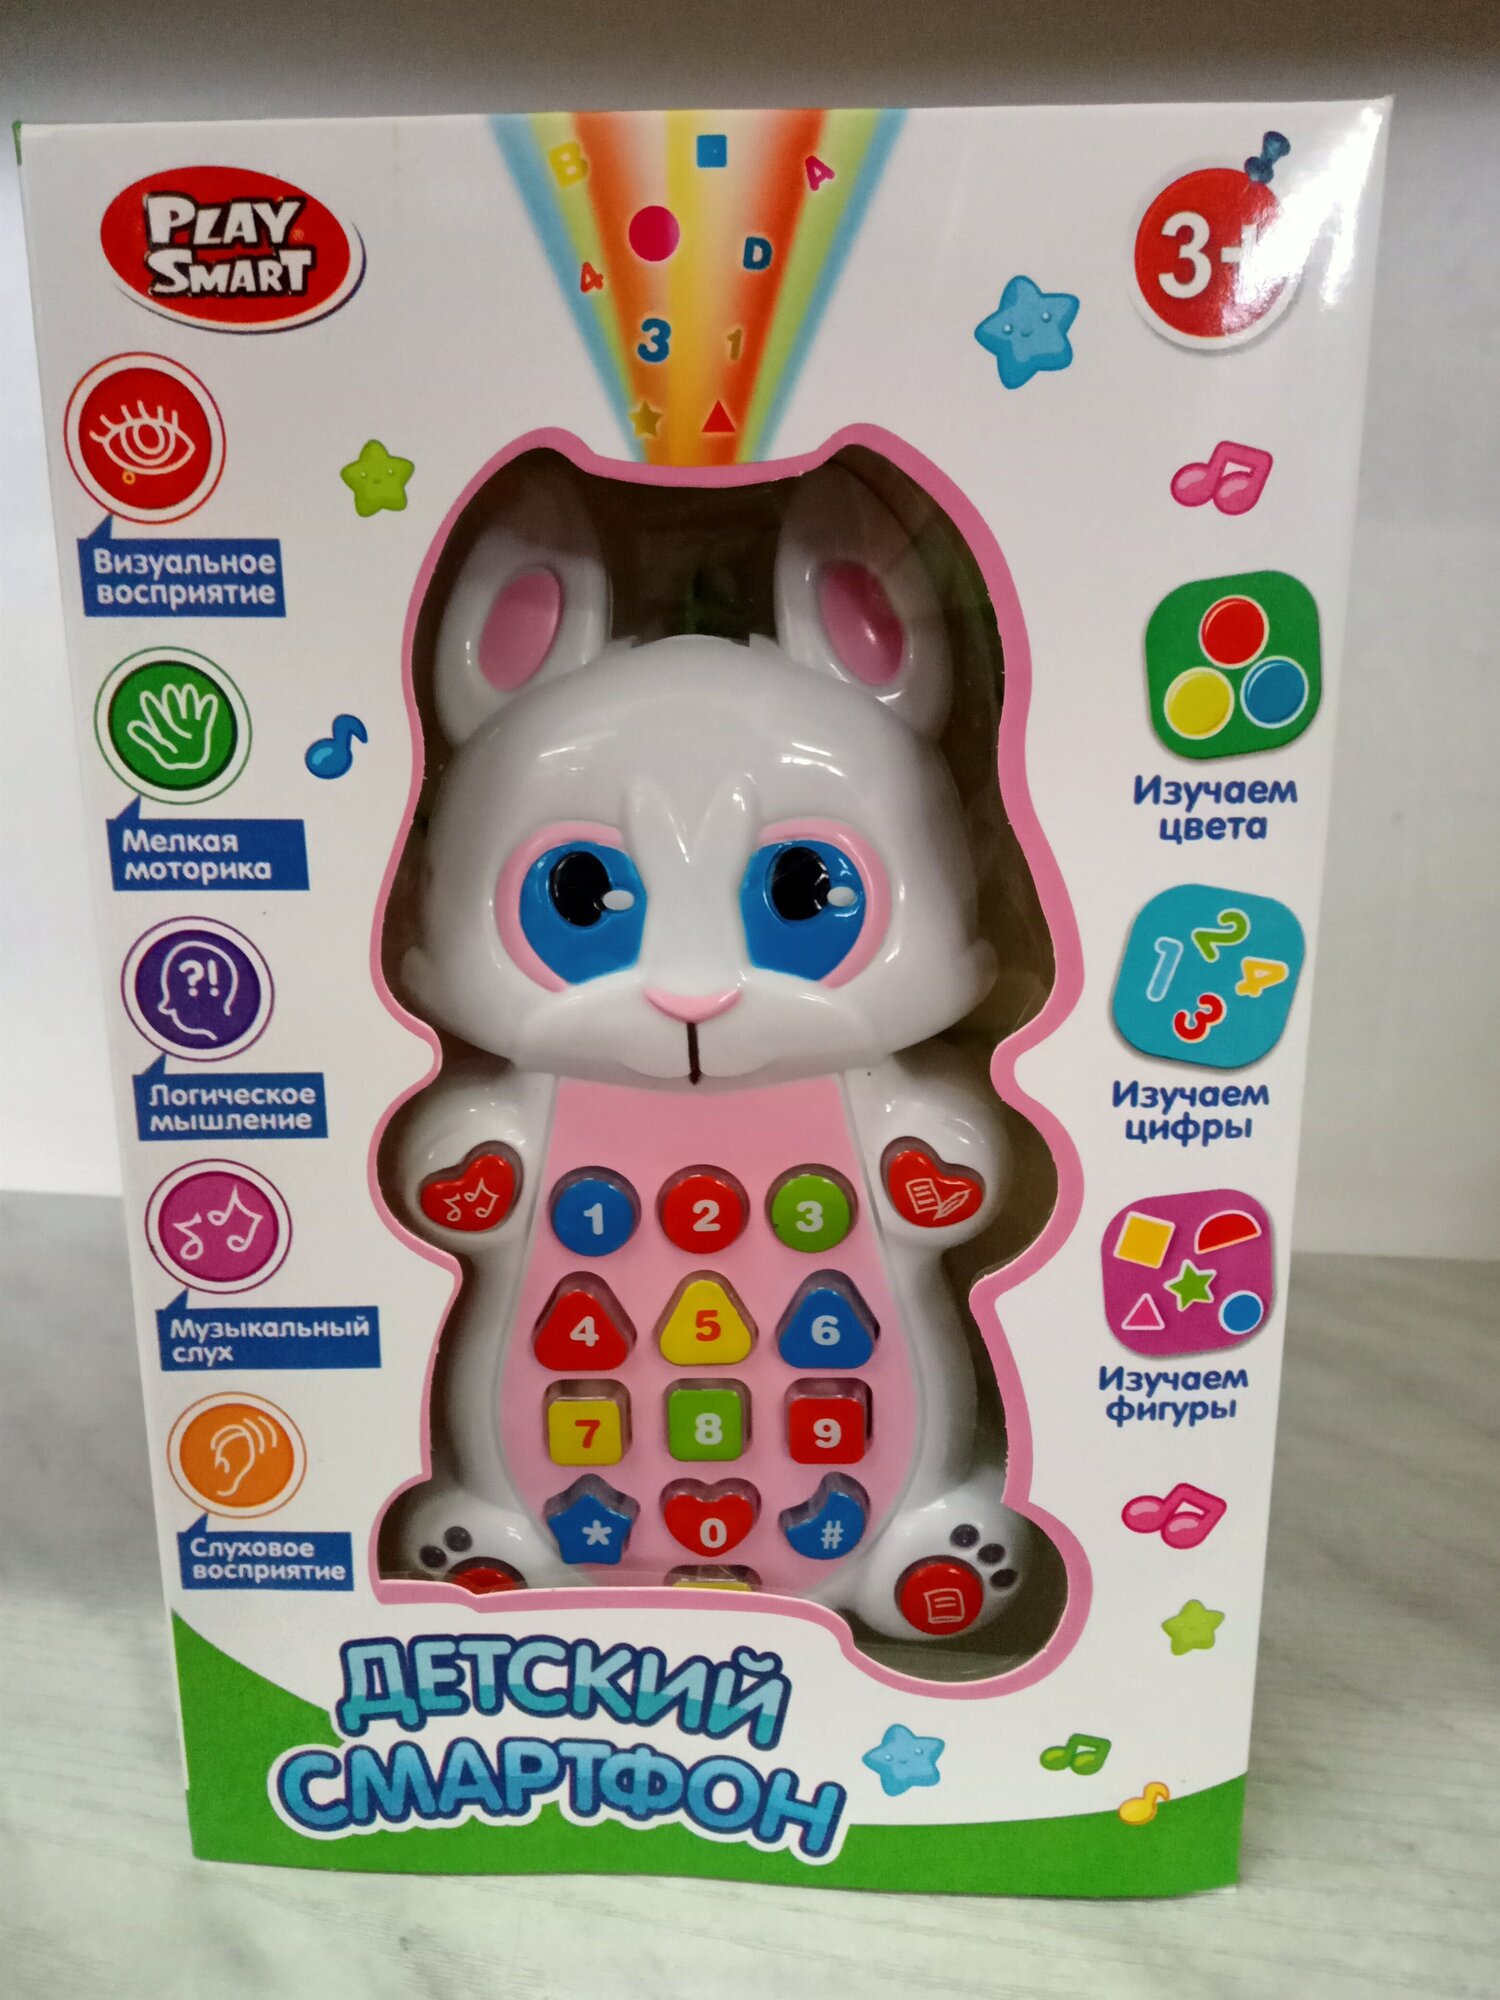 Интерактивная развивающая игрушка Play Smart Детский смартфон 7613, белый